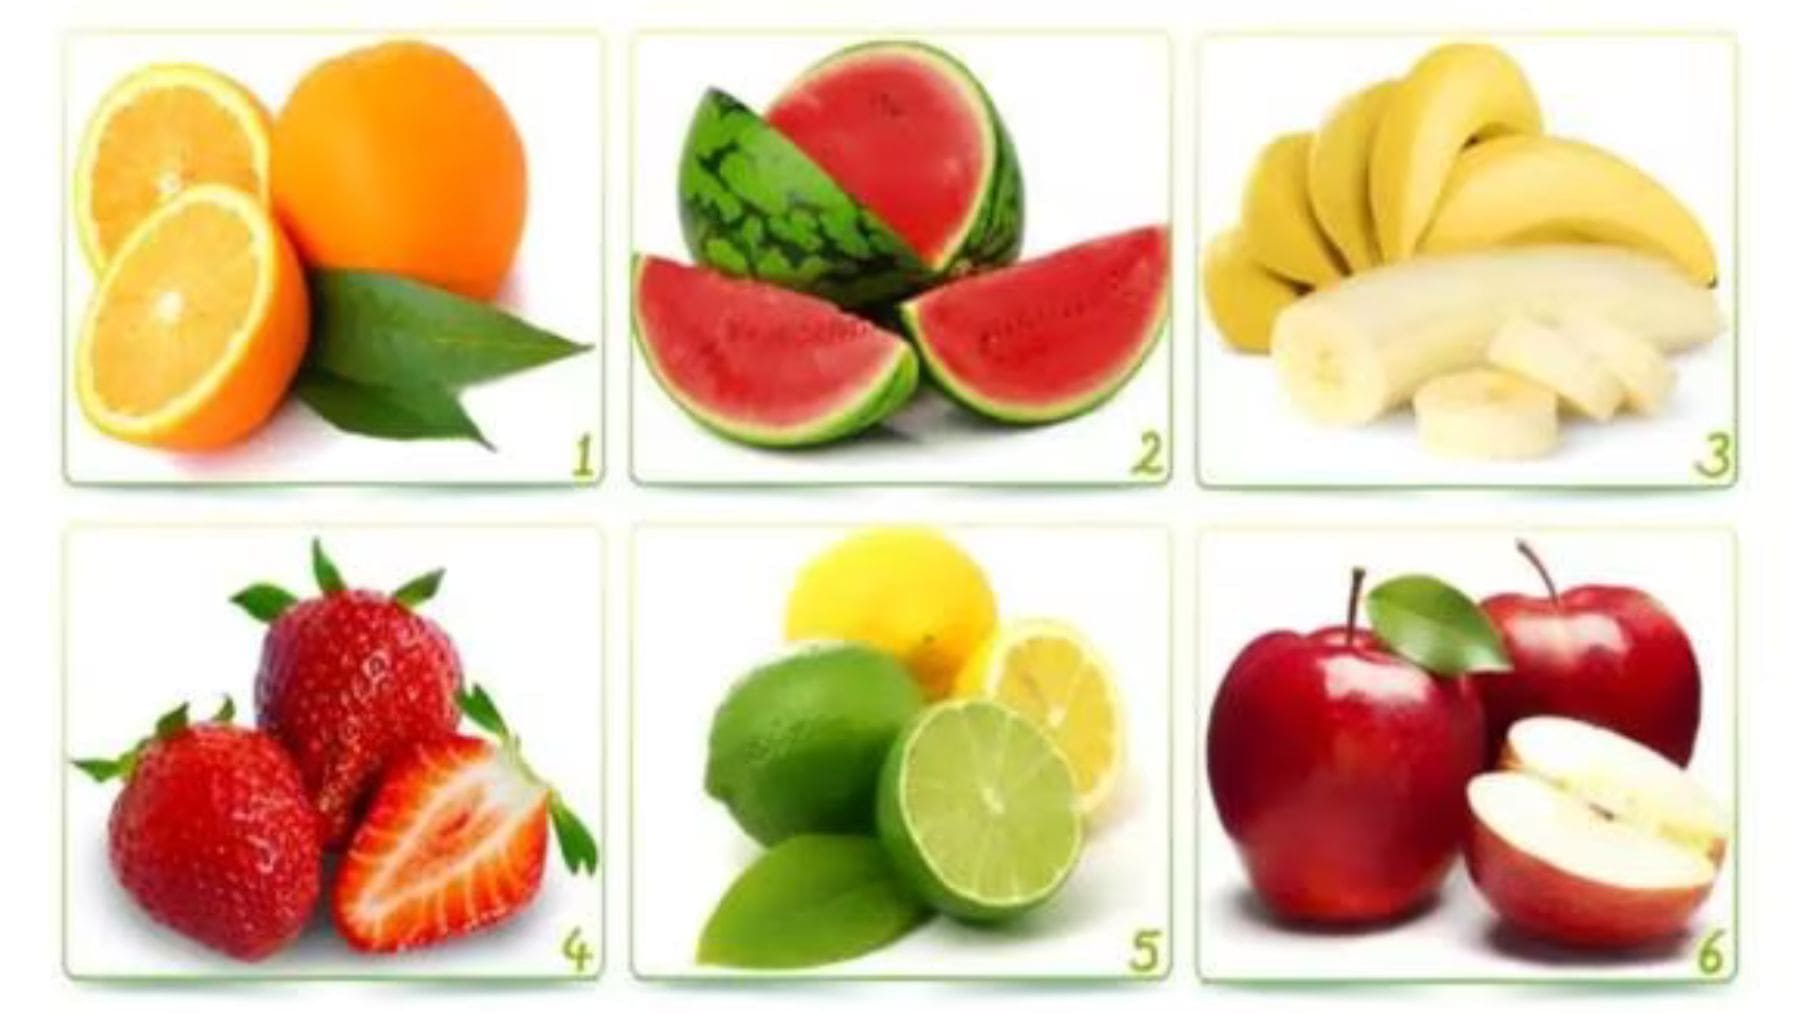 Test de personnalité : Quel est le fruit que vous aimez le plus ?